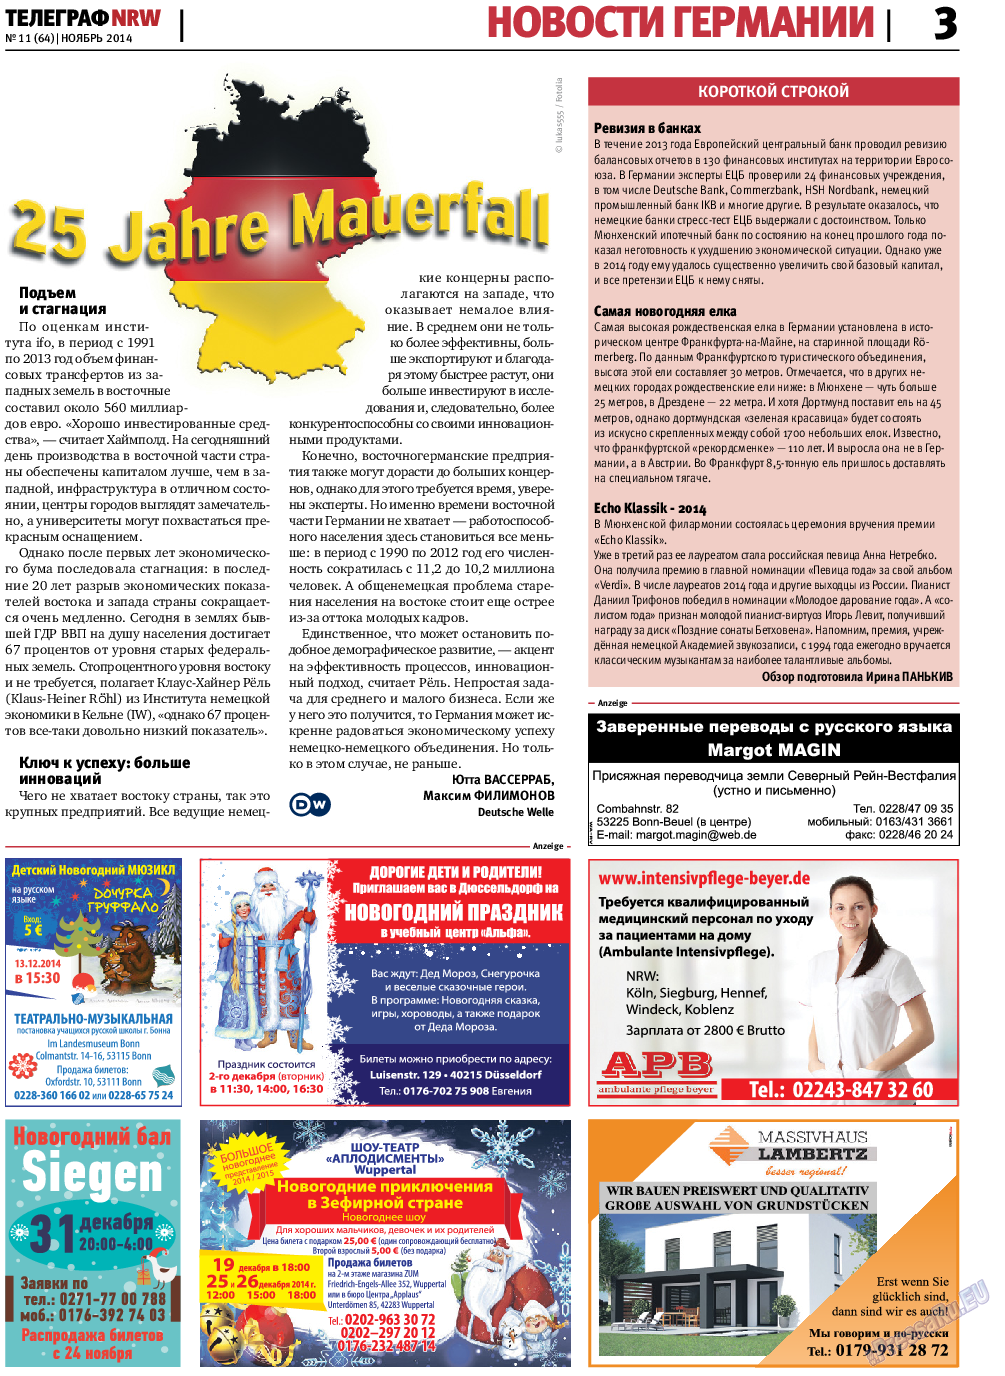 Телеграф NRW (газета). 2014 год, номер 11, стр. 3